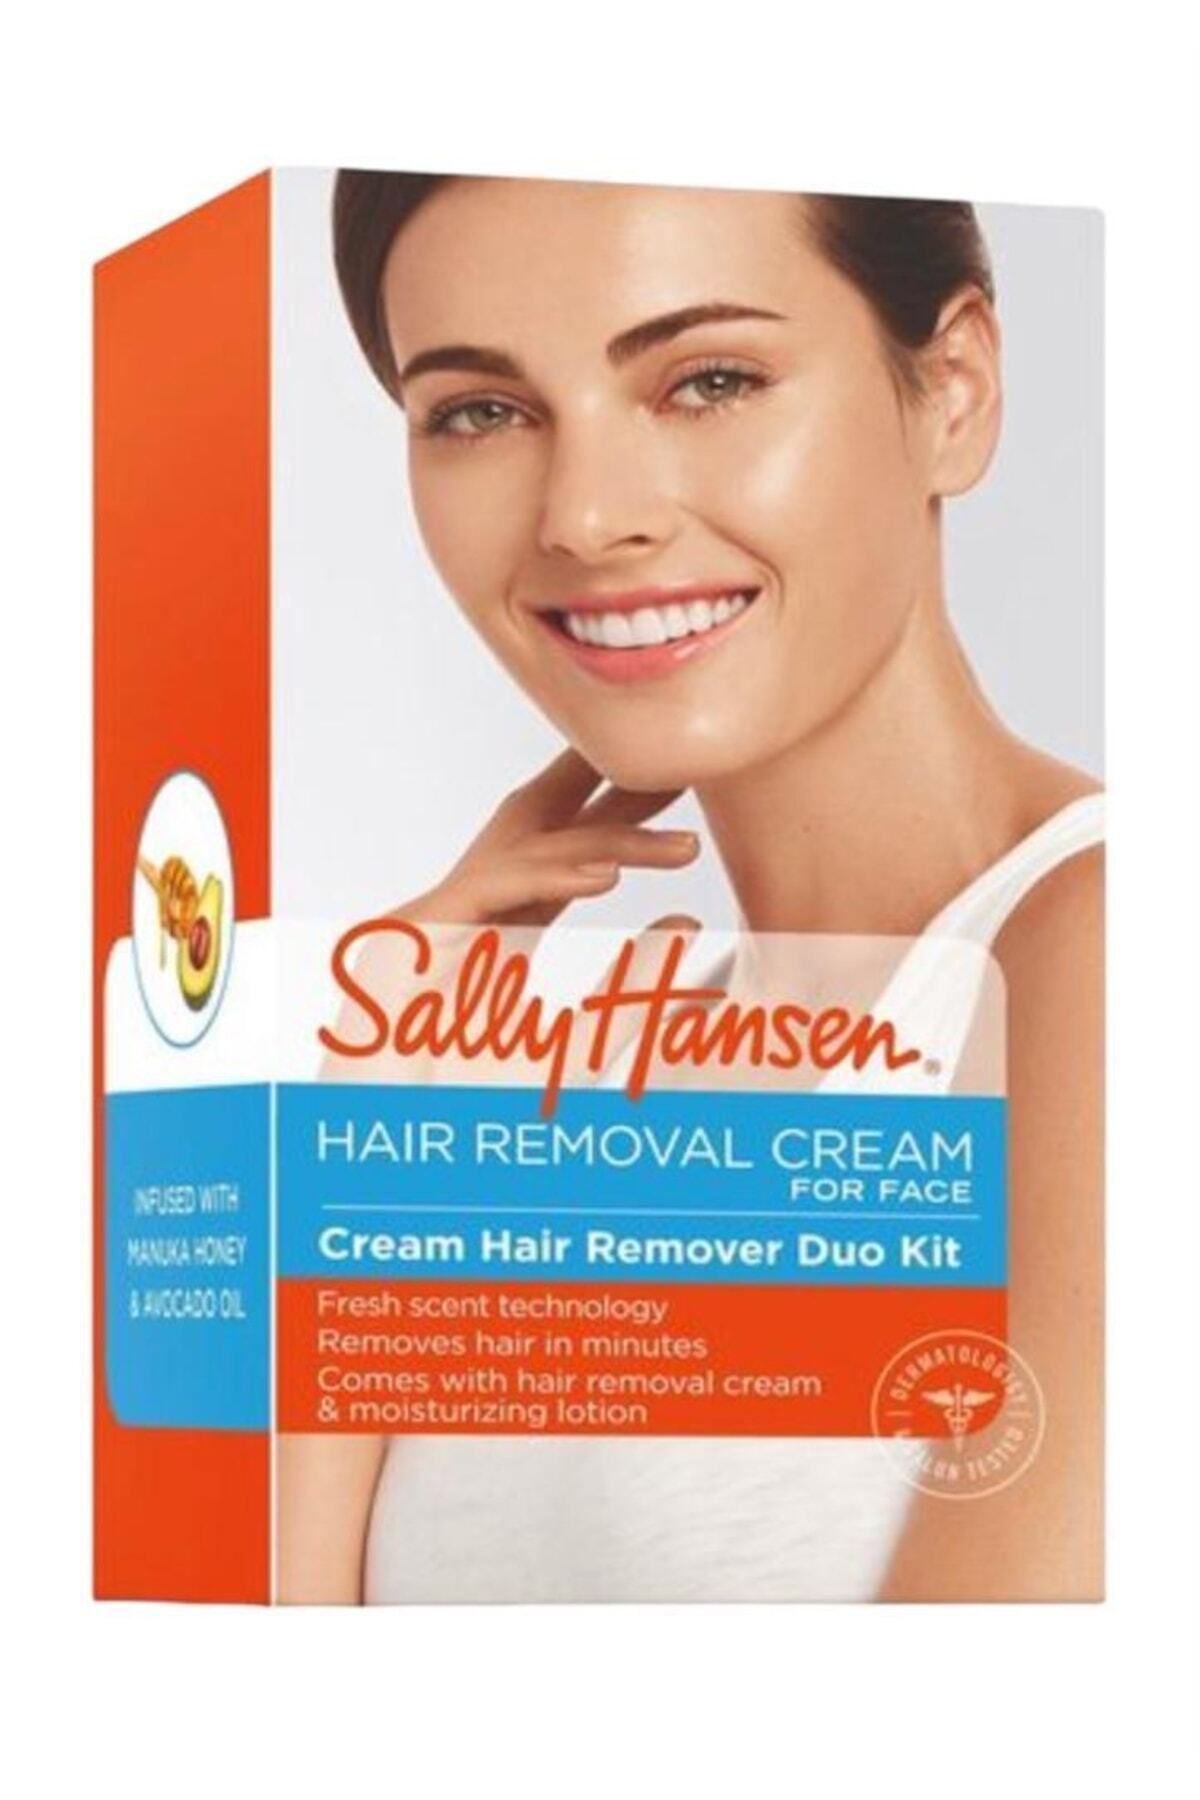 Sally Hansen Yüz Tüy Dökücü Krem Hair Removal Cream For Face